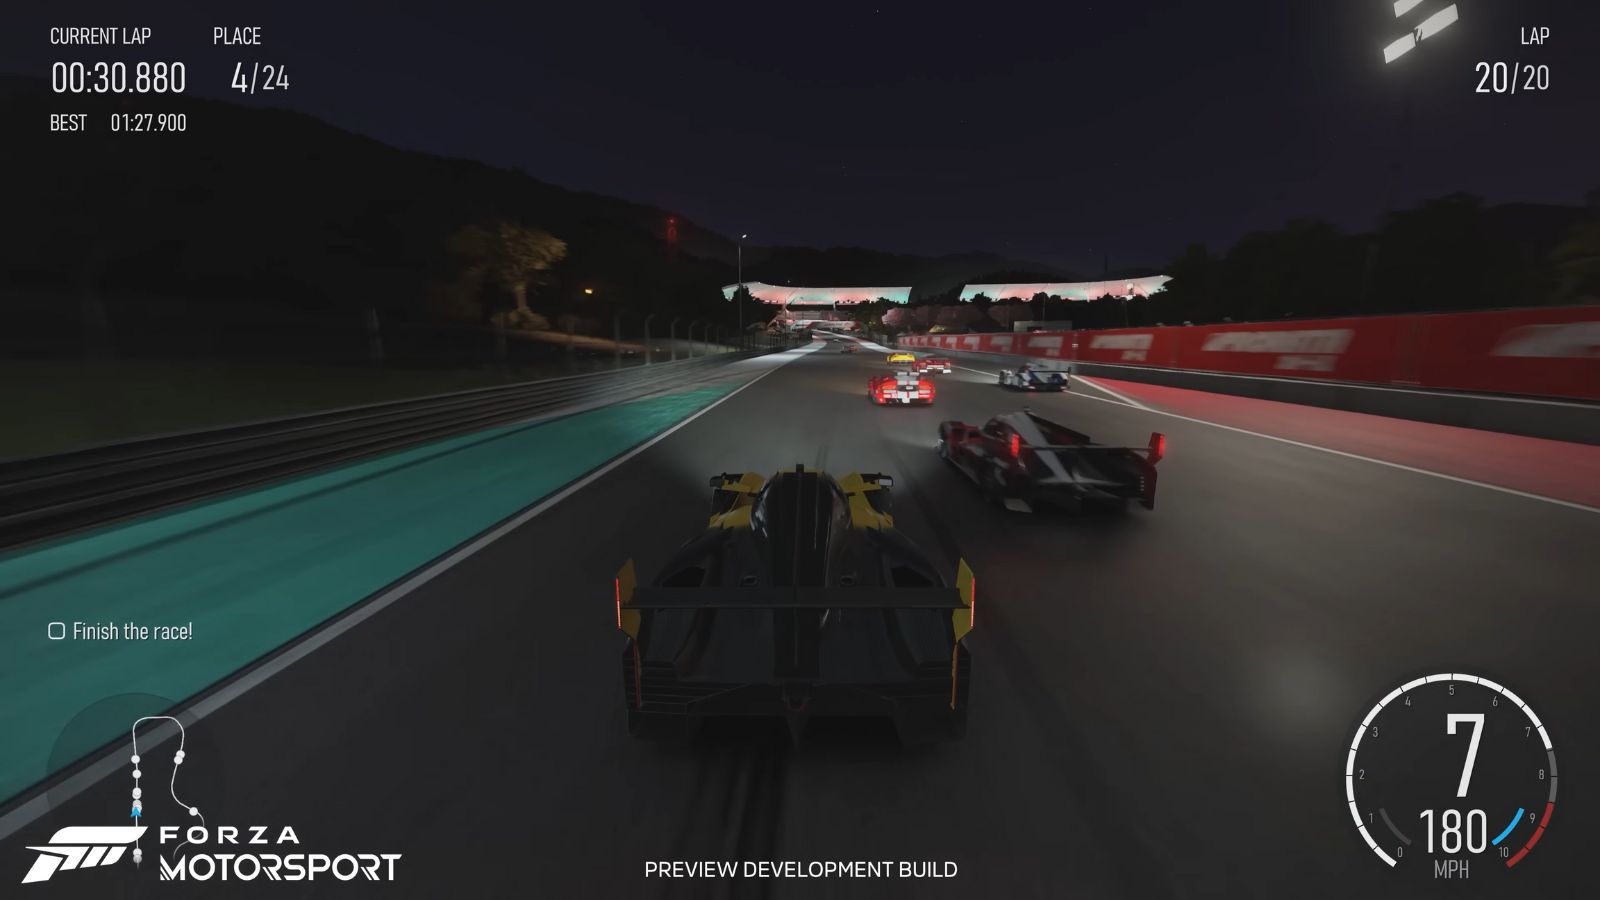 Živá grafika Forza Motorsport oklame hráčov, aby si mysleli, že ide o skutočné zábery